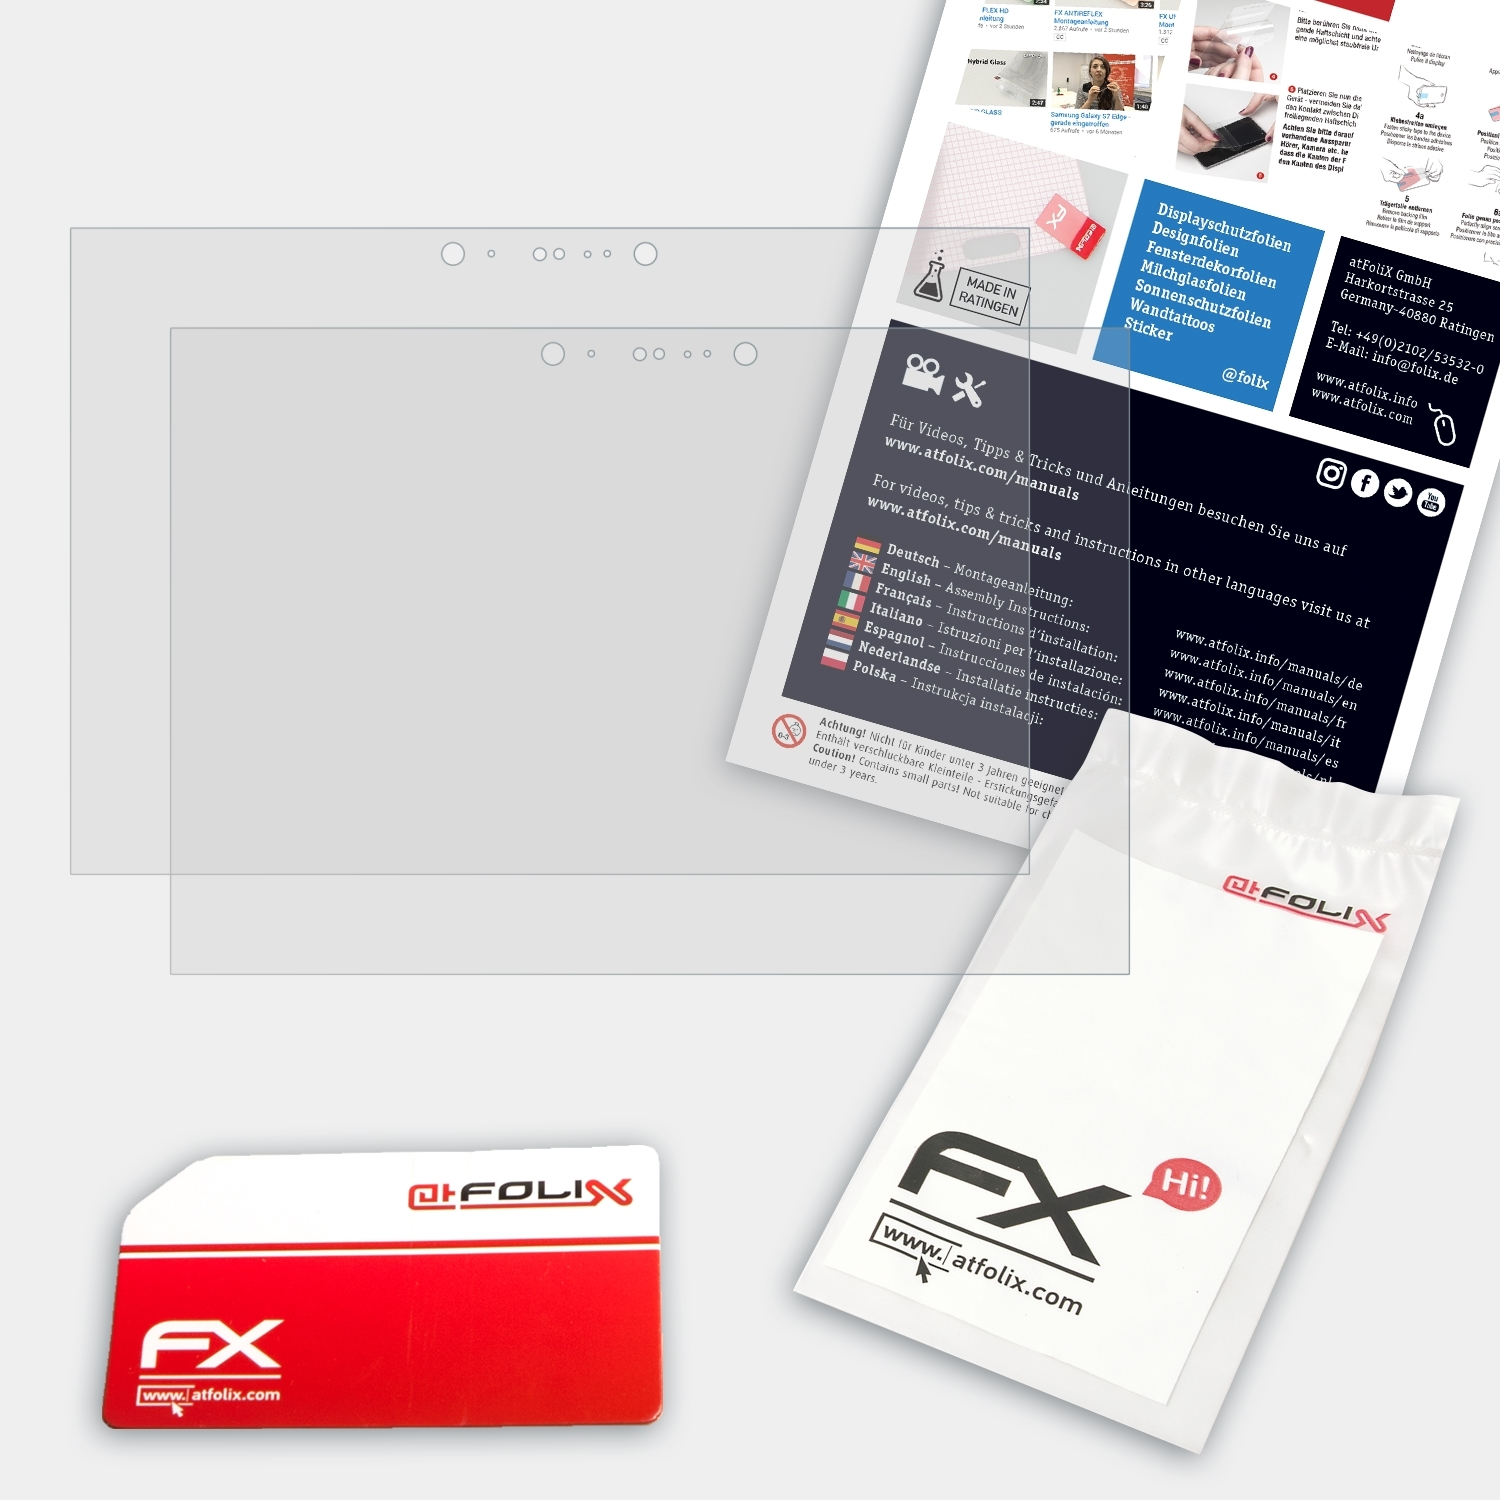 ATFOLIX 2x FX-Antireflex x2) ZBook Displayschutz(für HP